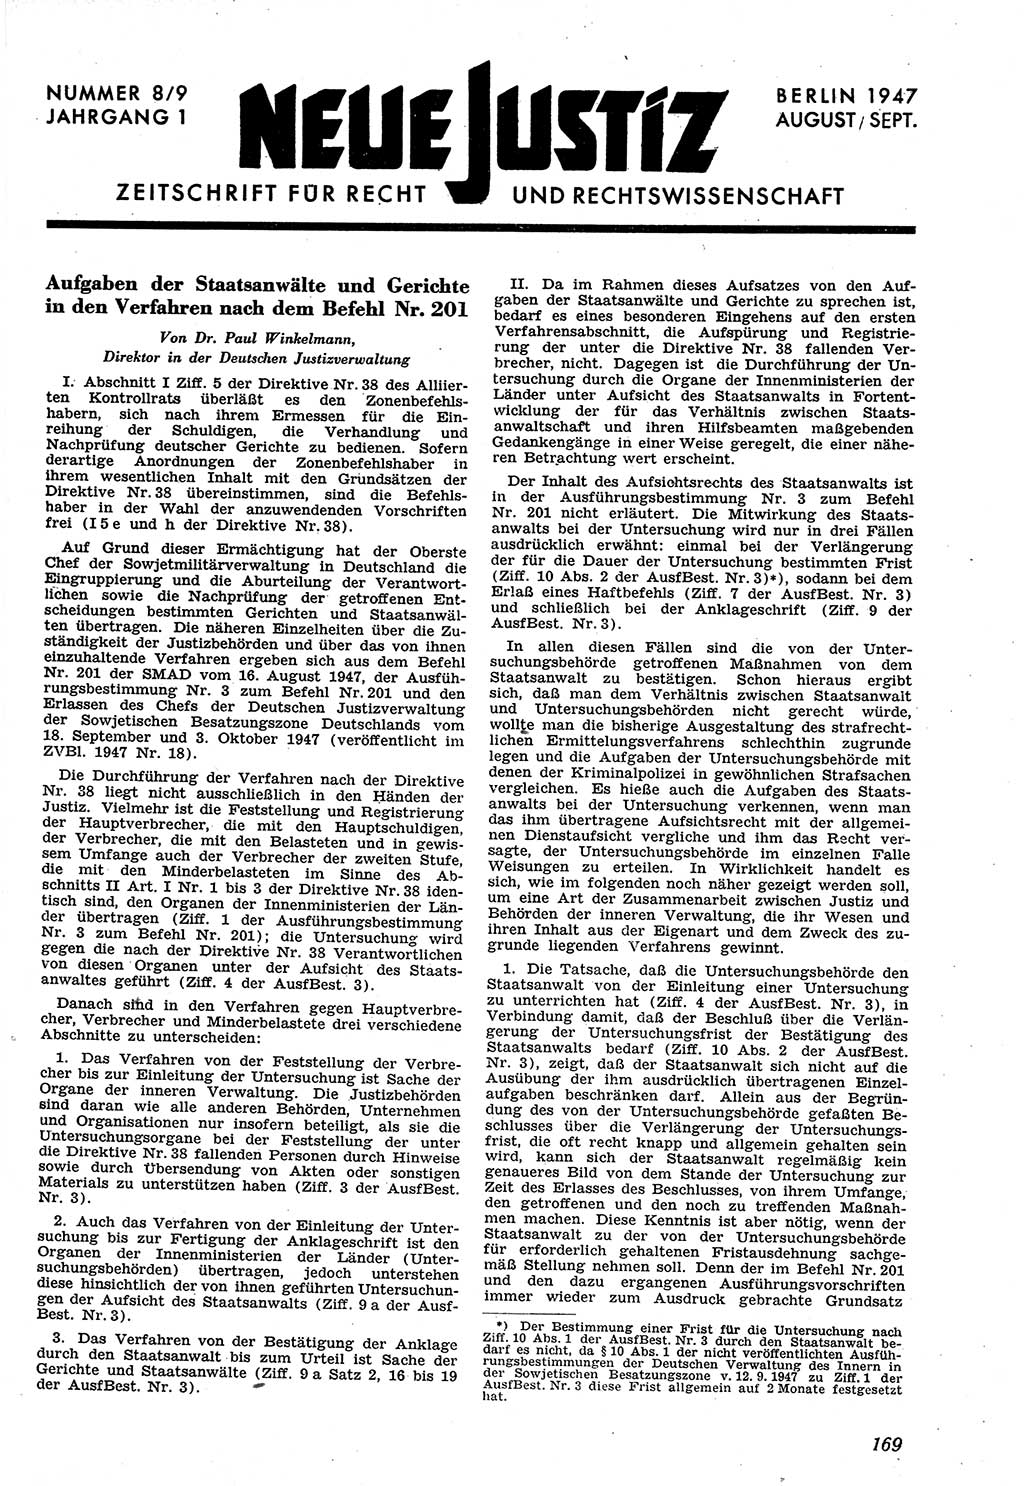 Neue Justiz (NJ), Zeitschrift für Recht und Rechtswissenschaft [Sowjetische Besatzungszone (SBZ) Deutschland], 1. Jahrgang 1947, Seite 169 (NJ SBZ Dtl. 1947, S. 169)